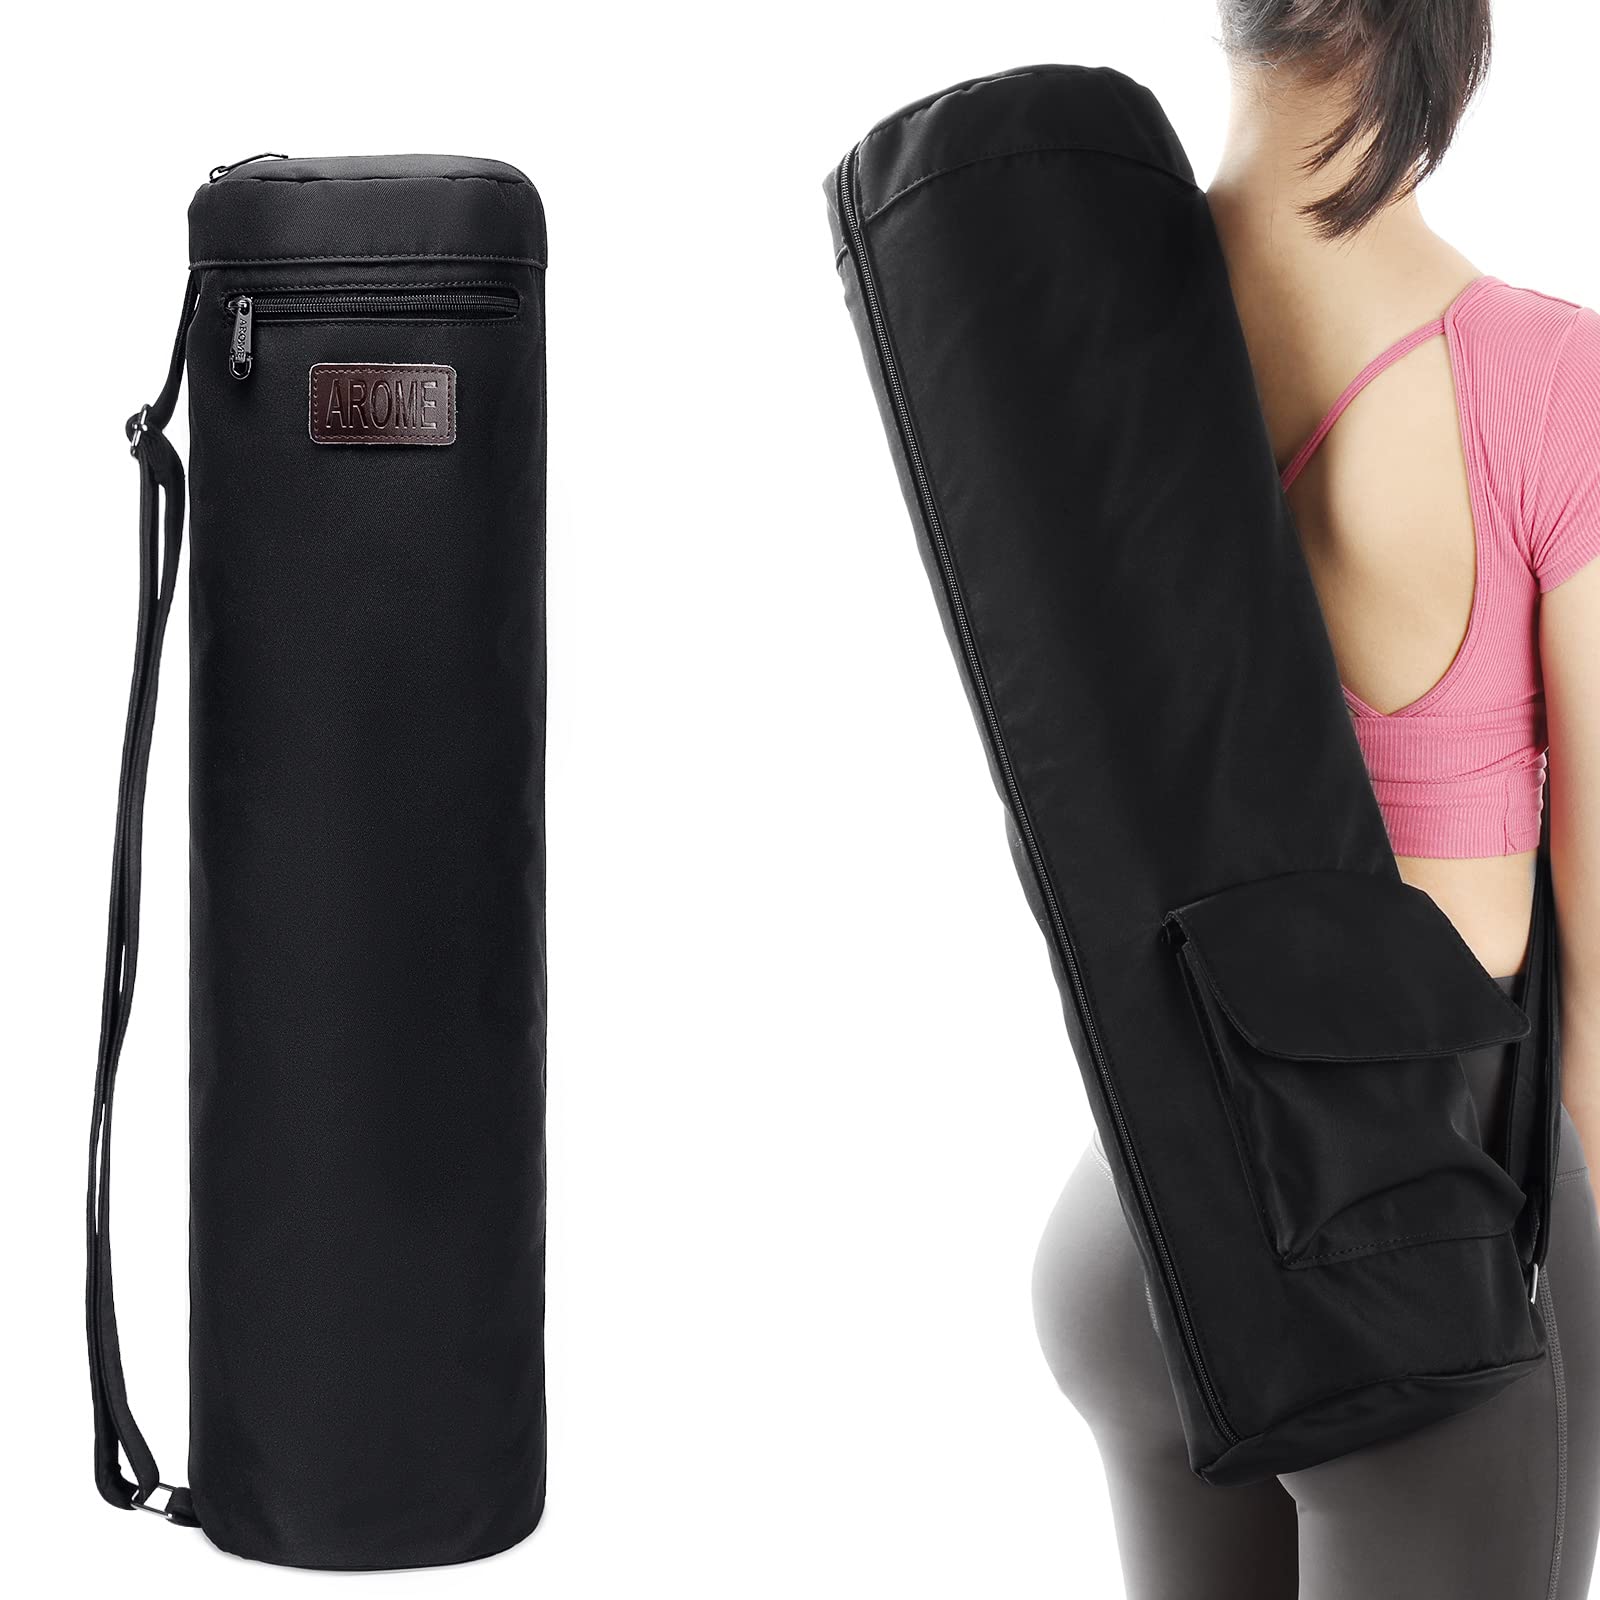 Yoga Bag, Yoga Mat Bag For Robust Yoga Mat Carrying Bag With Adjustable  Shoulder Strap, Black